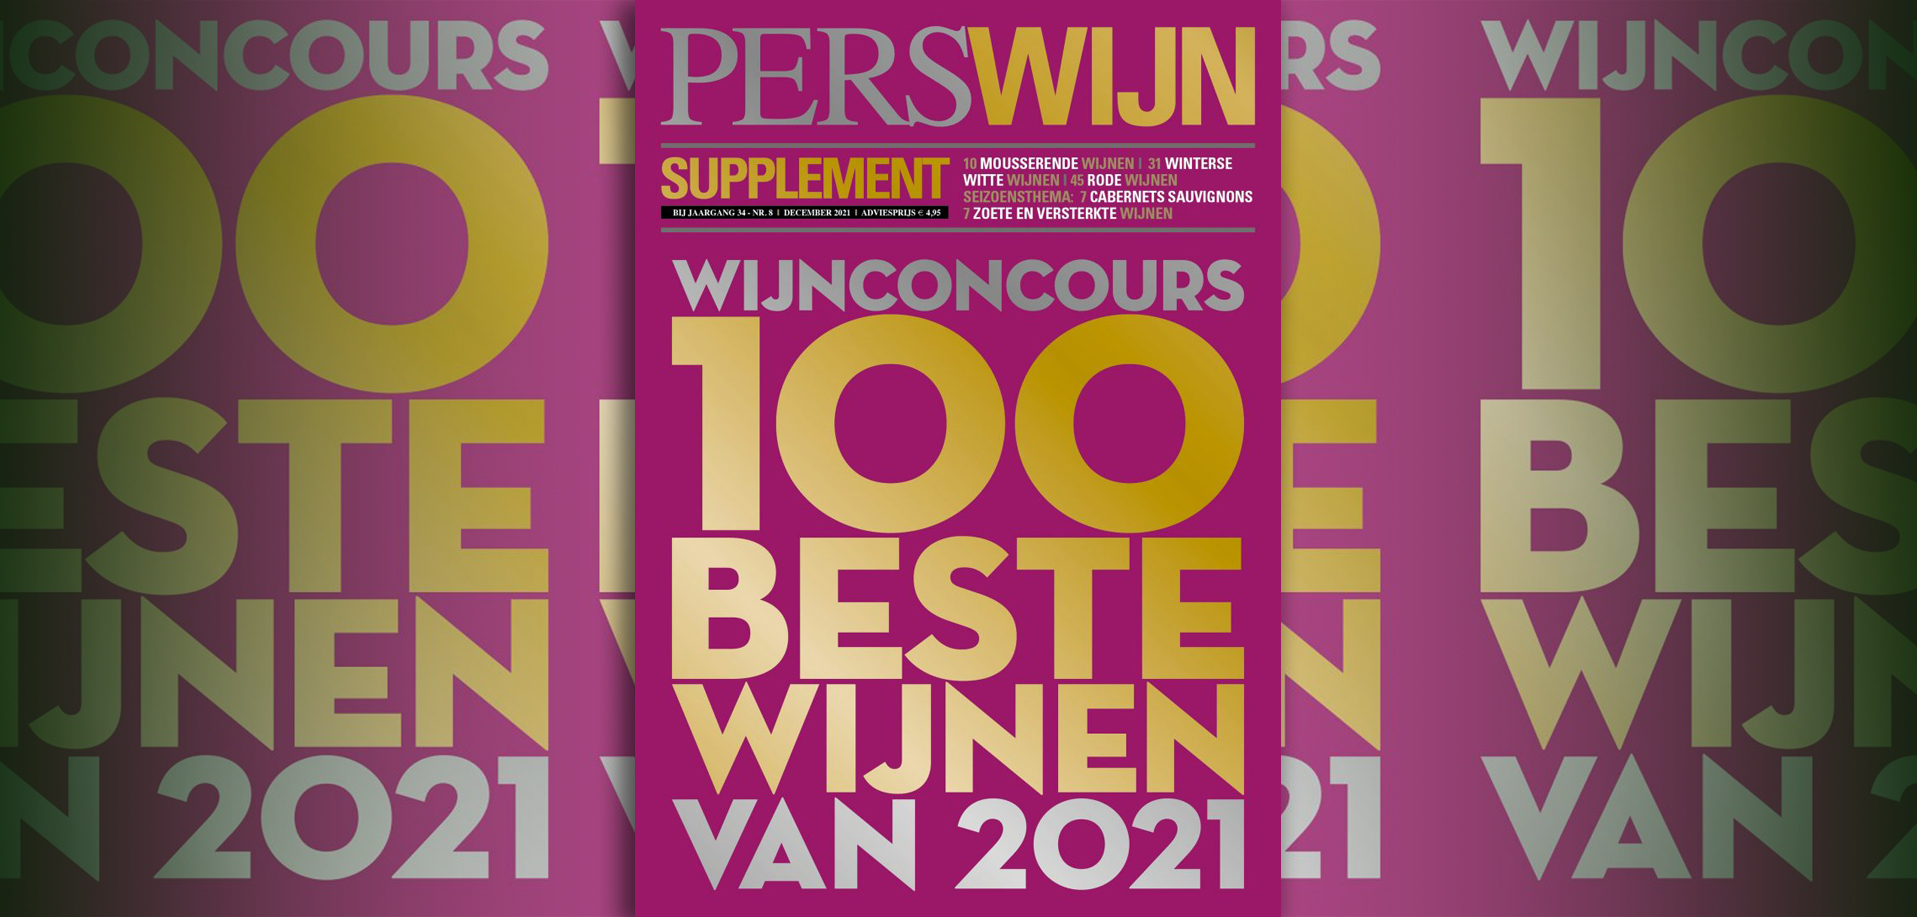 Laurent-Perrier en Clement winnaars Perswijn Wijnconcours 2021